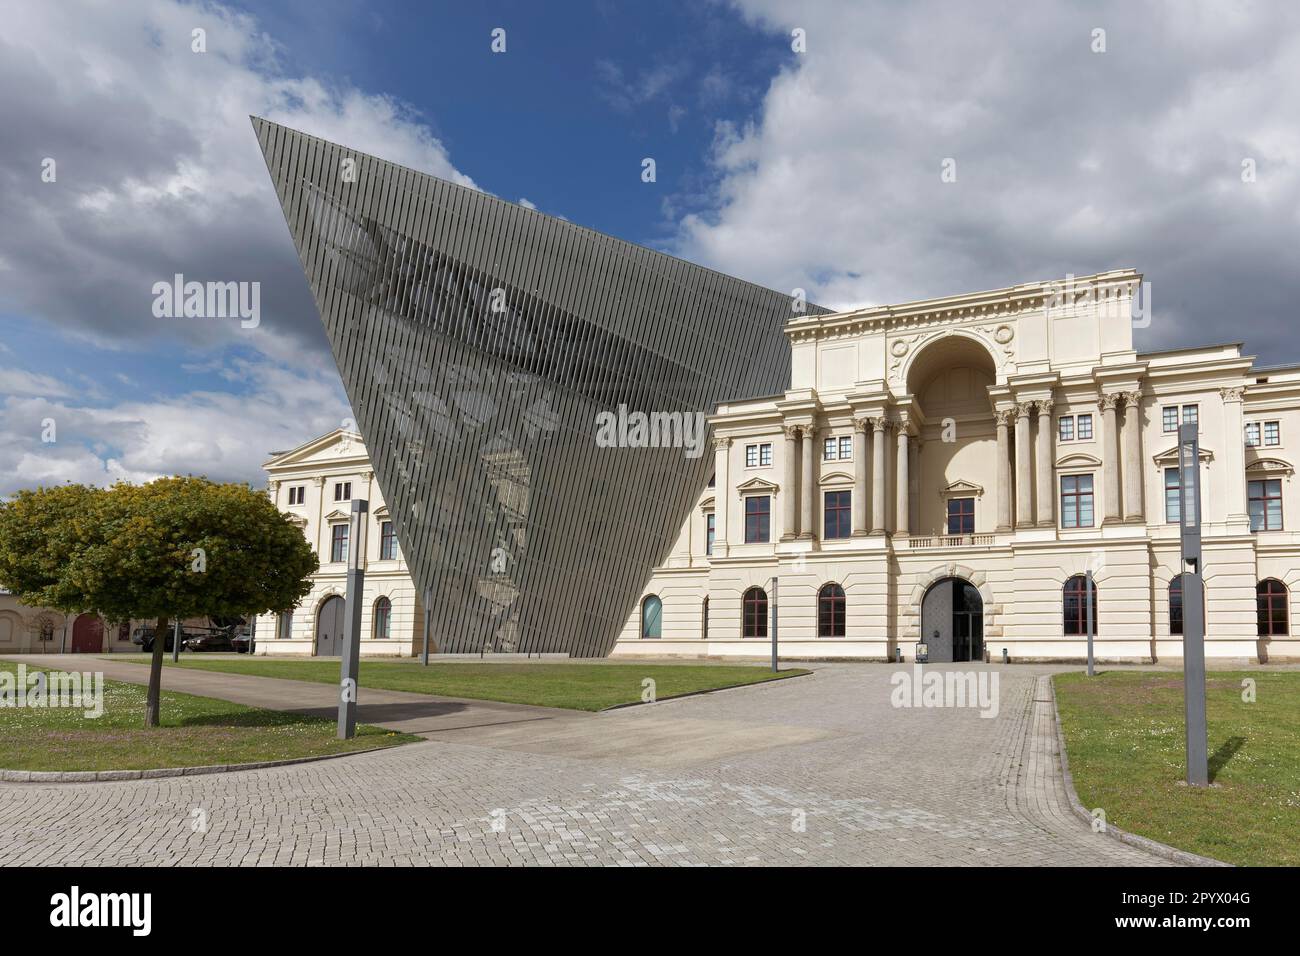 Musée d'histoire militaire des forces armées allemandes, architecte Daniel Libeskind, Dresde, Saxe, Allemagne Banque D'Images